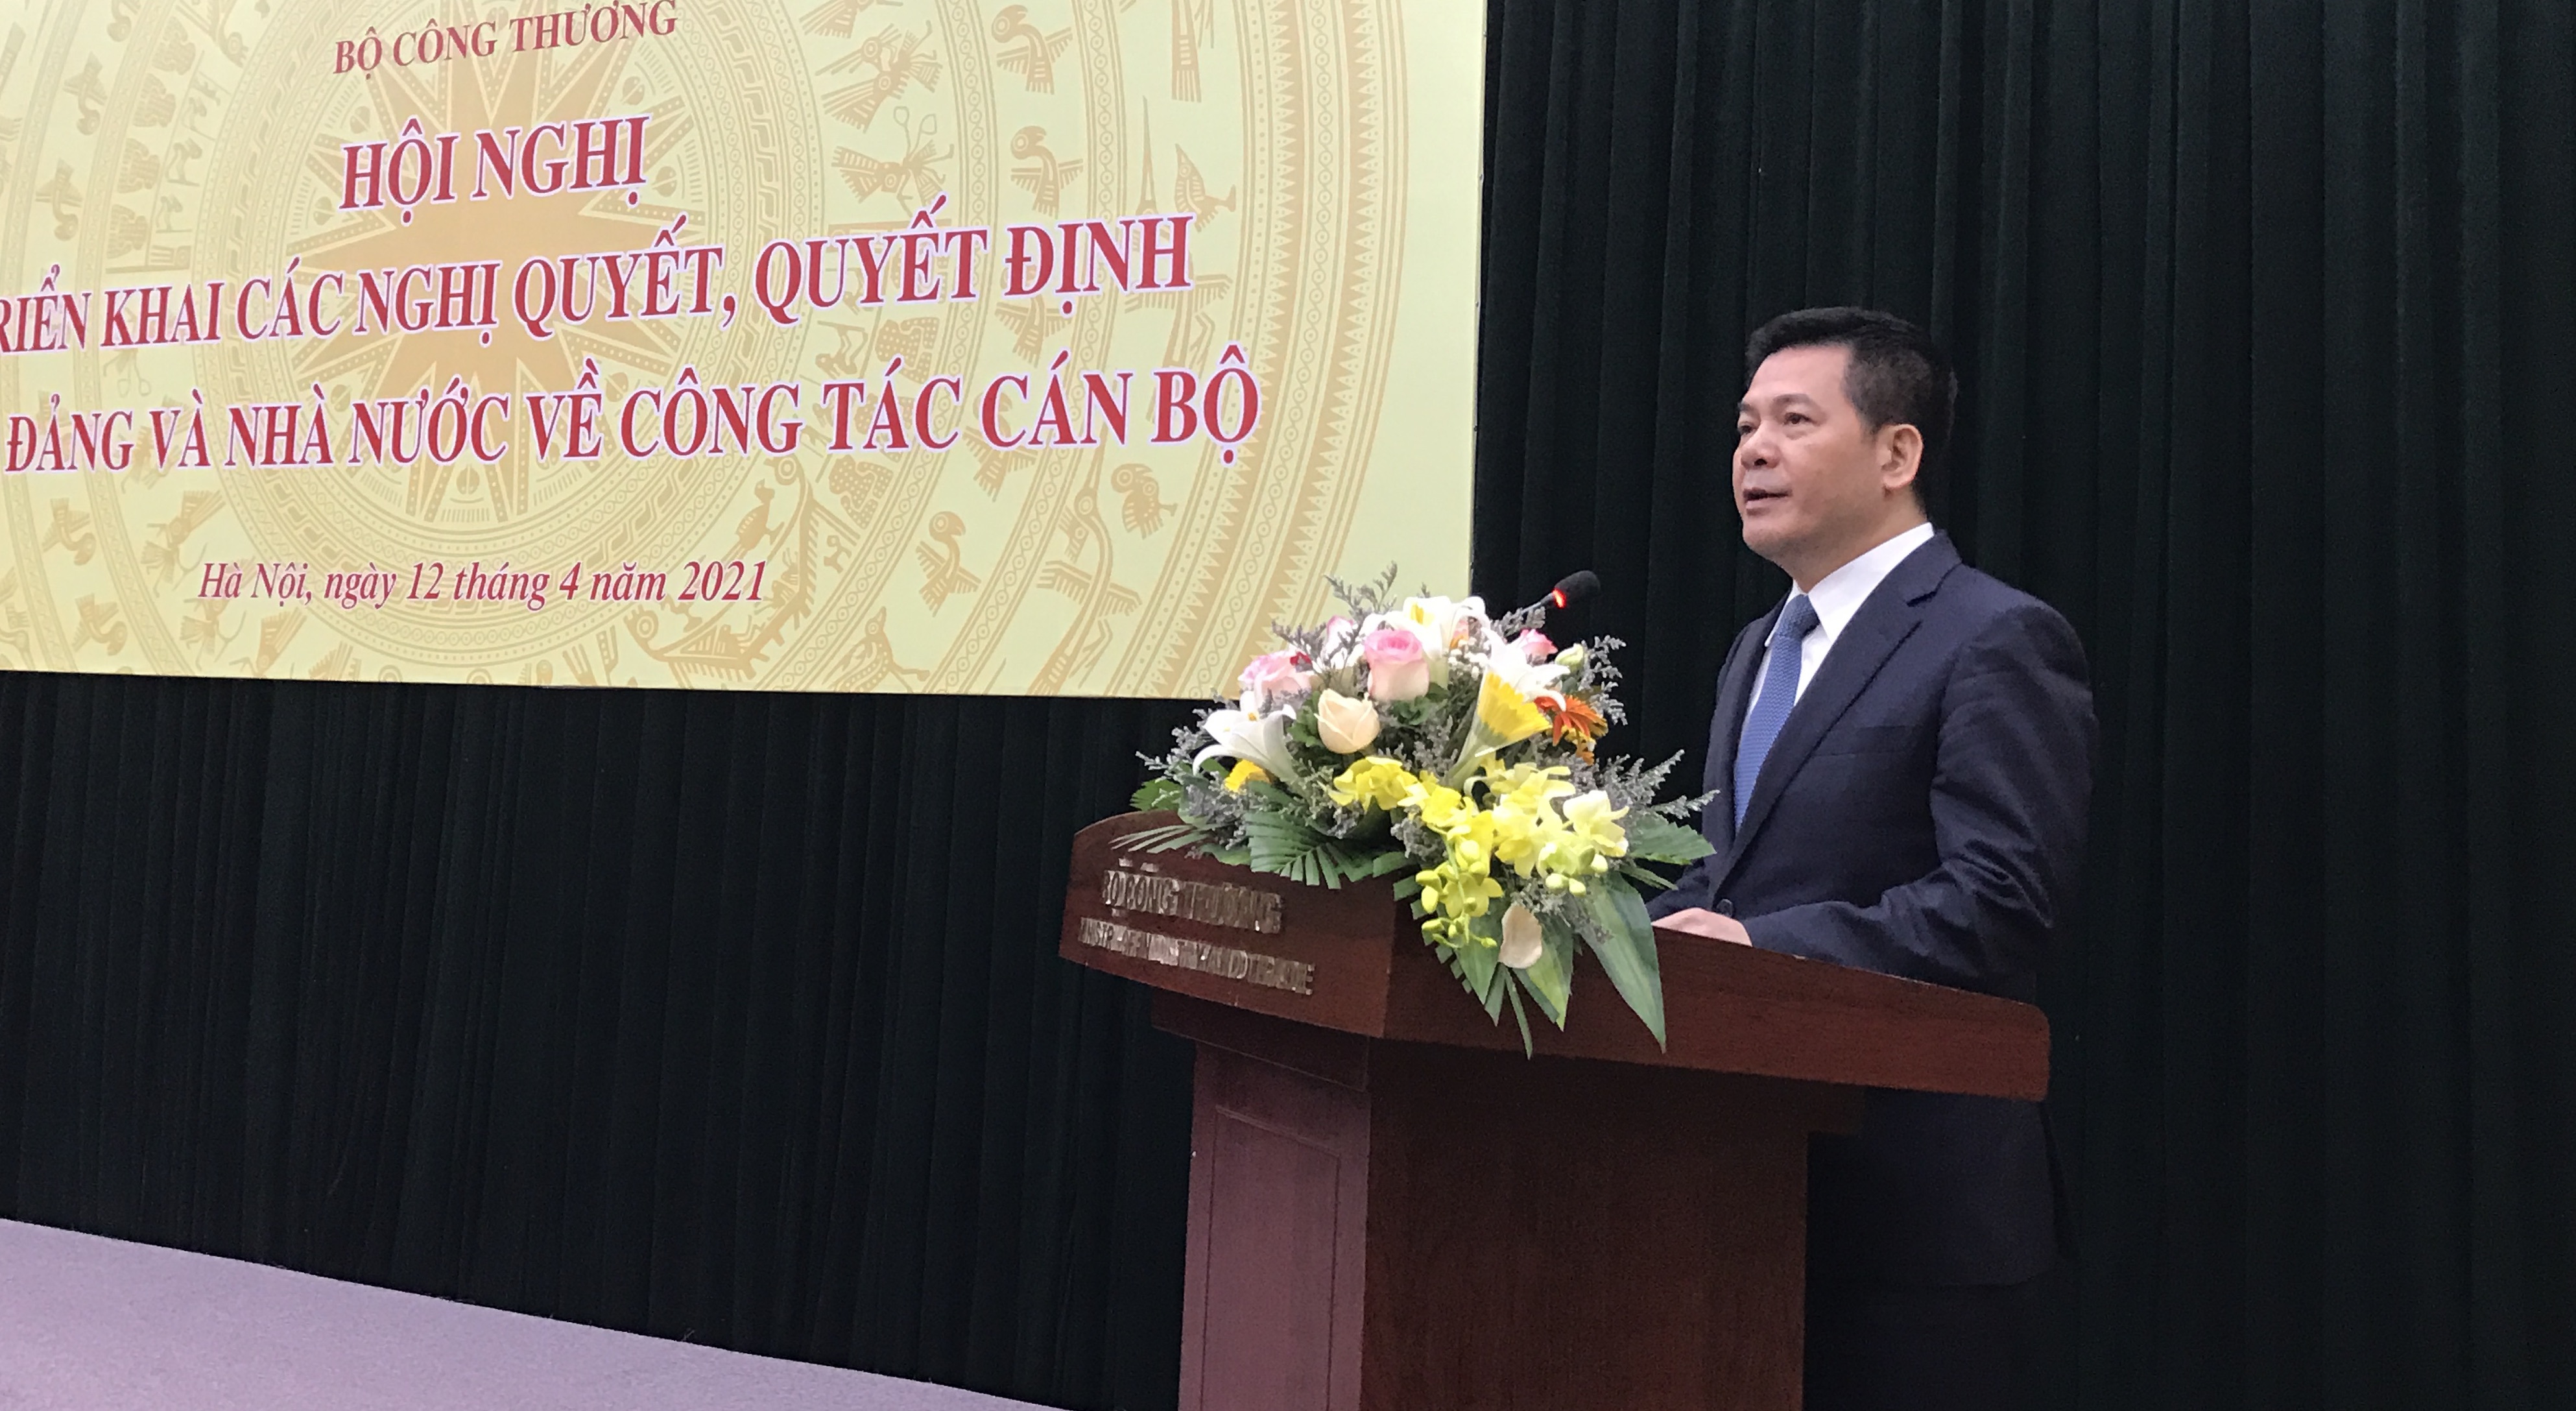 Ông Nguyễn Hồng Diên phát biểu gì tại họp triển khai quyết định bổ nhiệm?